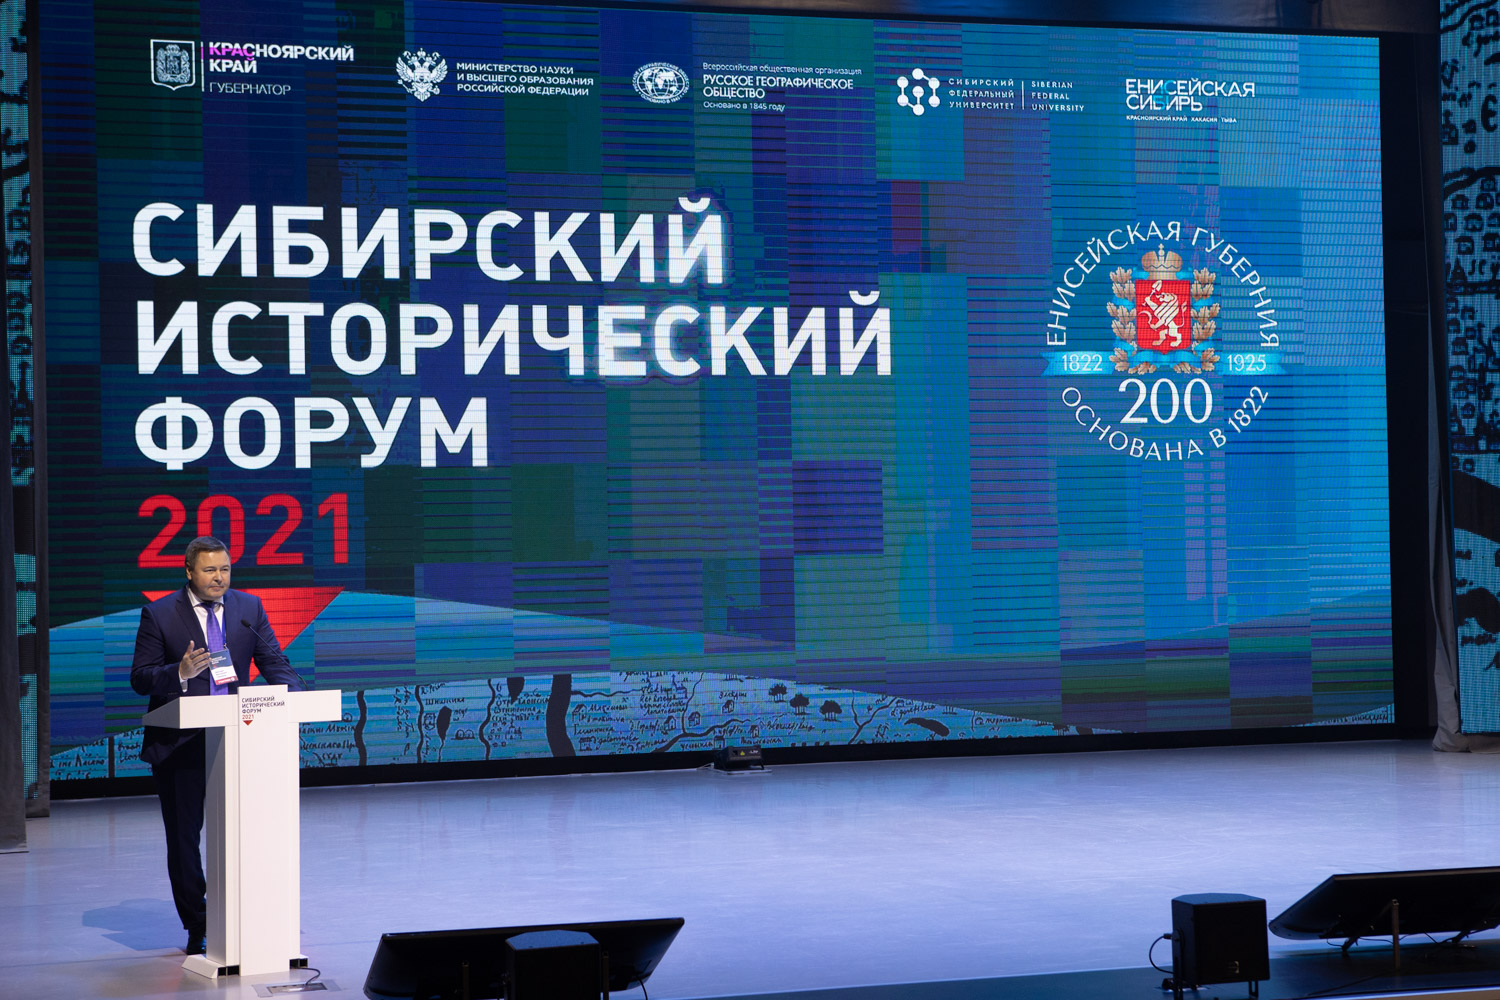 Председатель Заксобрания посетил крупнейшее научное мероприятие за Уралом - VIII Международный Сибирский исторический форум